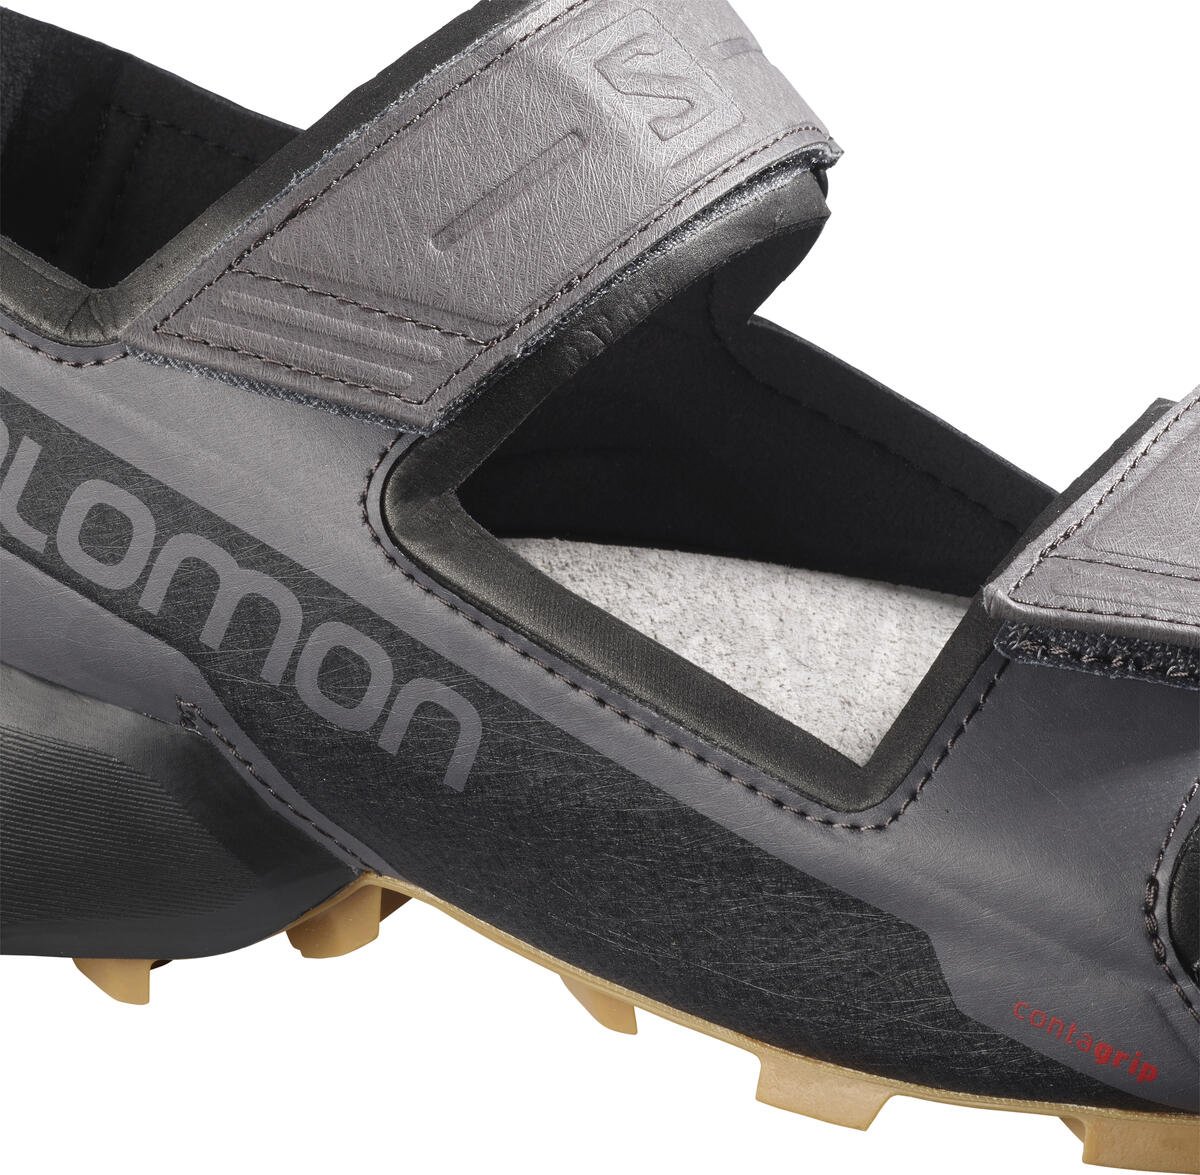 Sandály Salomon Speedcross Sandal - šedá/černá